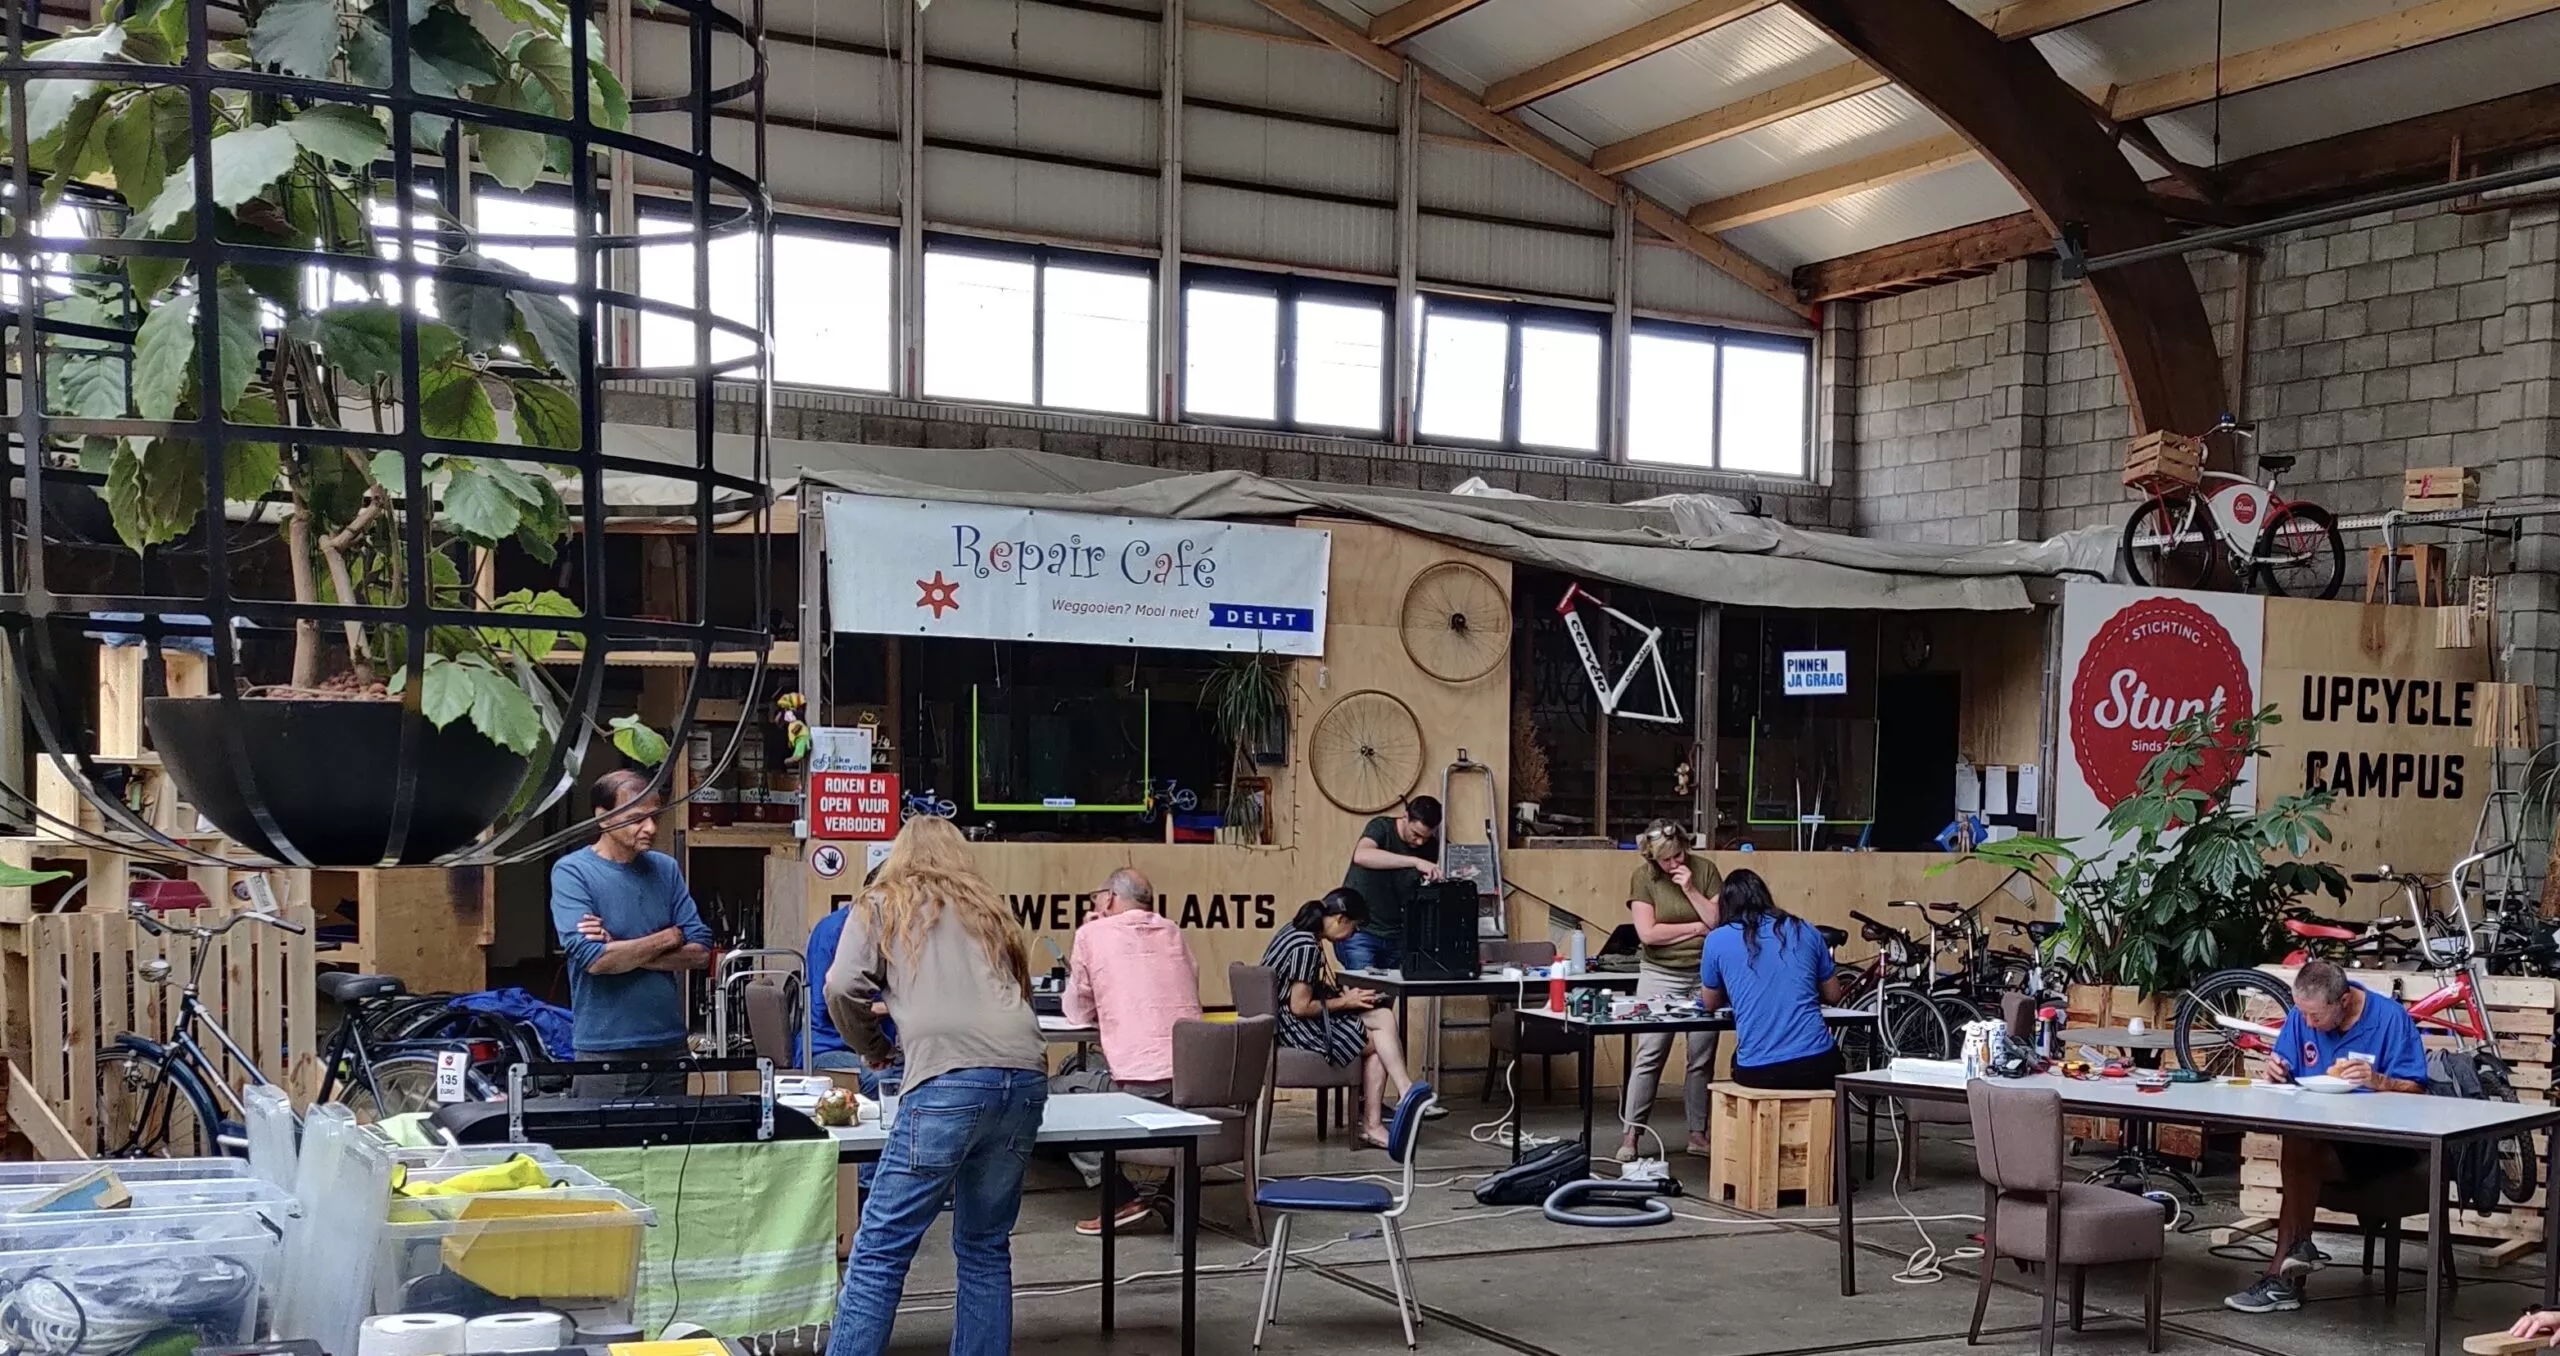 De werkplaats van het repair cafe is te zien met meerdere volwassenen in beeld, iedereen werkt in groepjes aan een project.